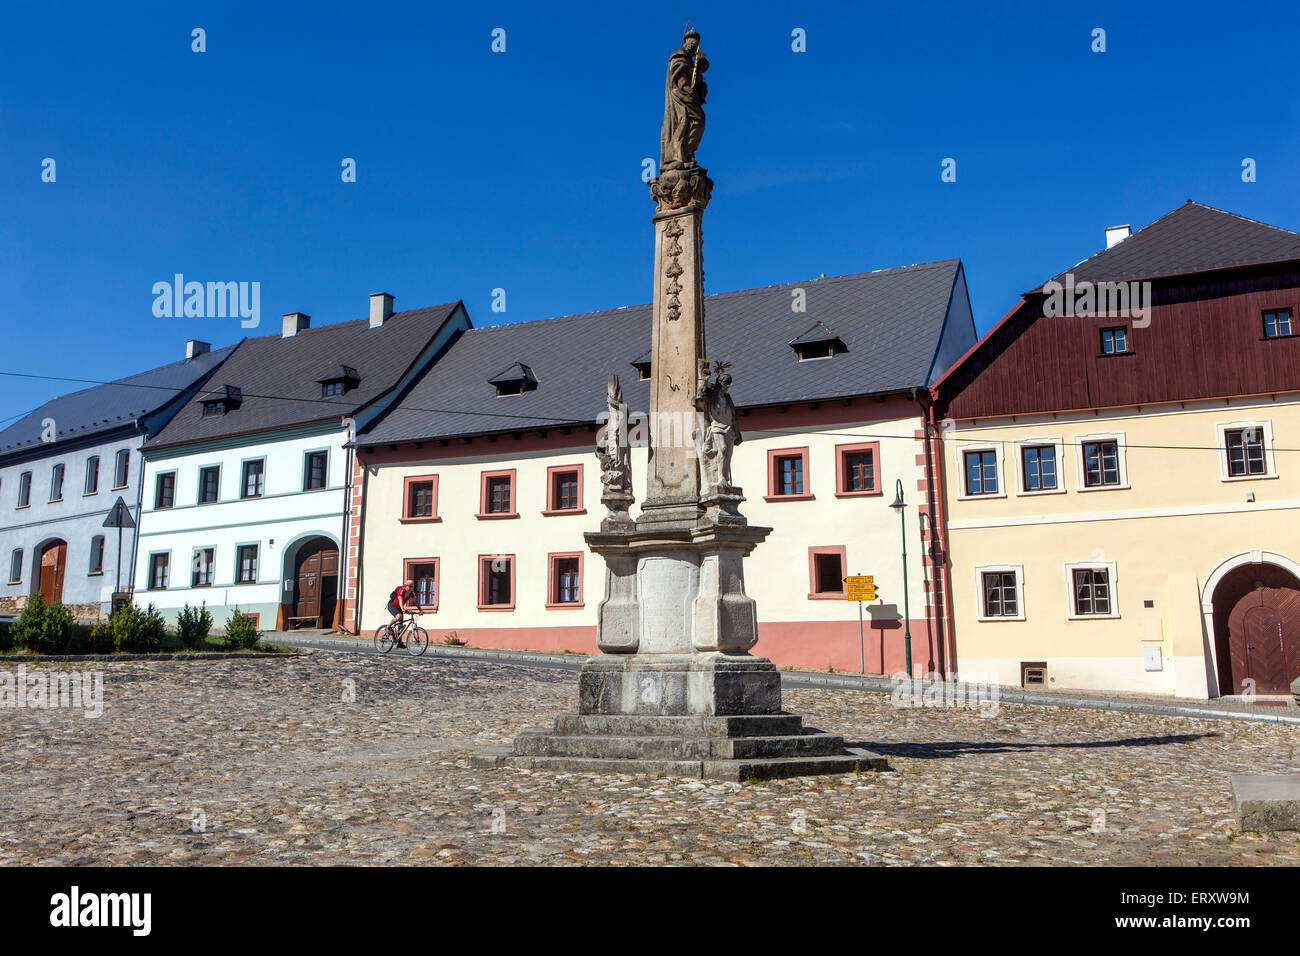 Tschechische Republik Utery, eine kleine malerische Stadt, Plzen Region Westböhmen, Renaissance Stadthäuser gepflasterten Platz Stockfoto